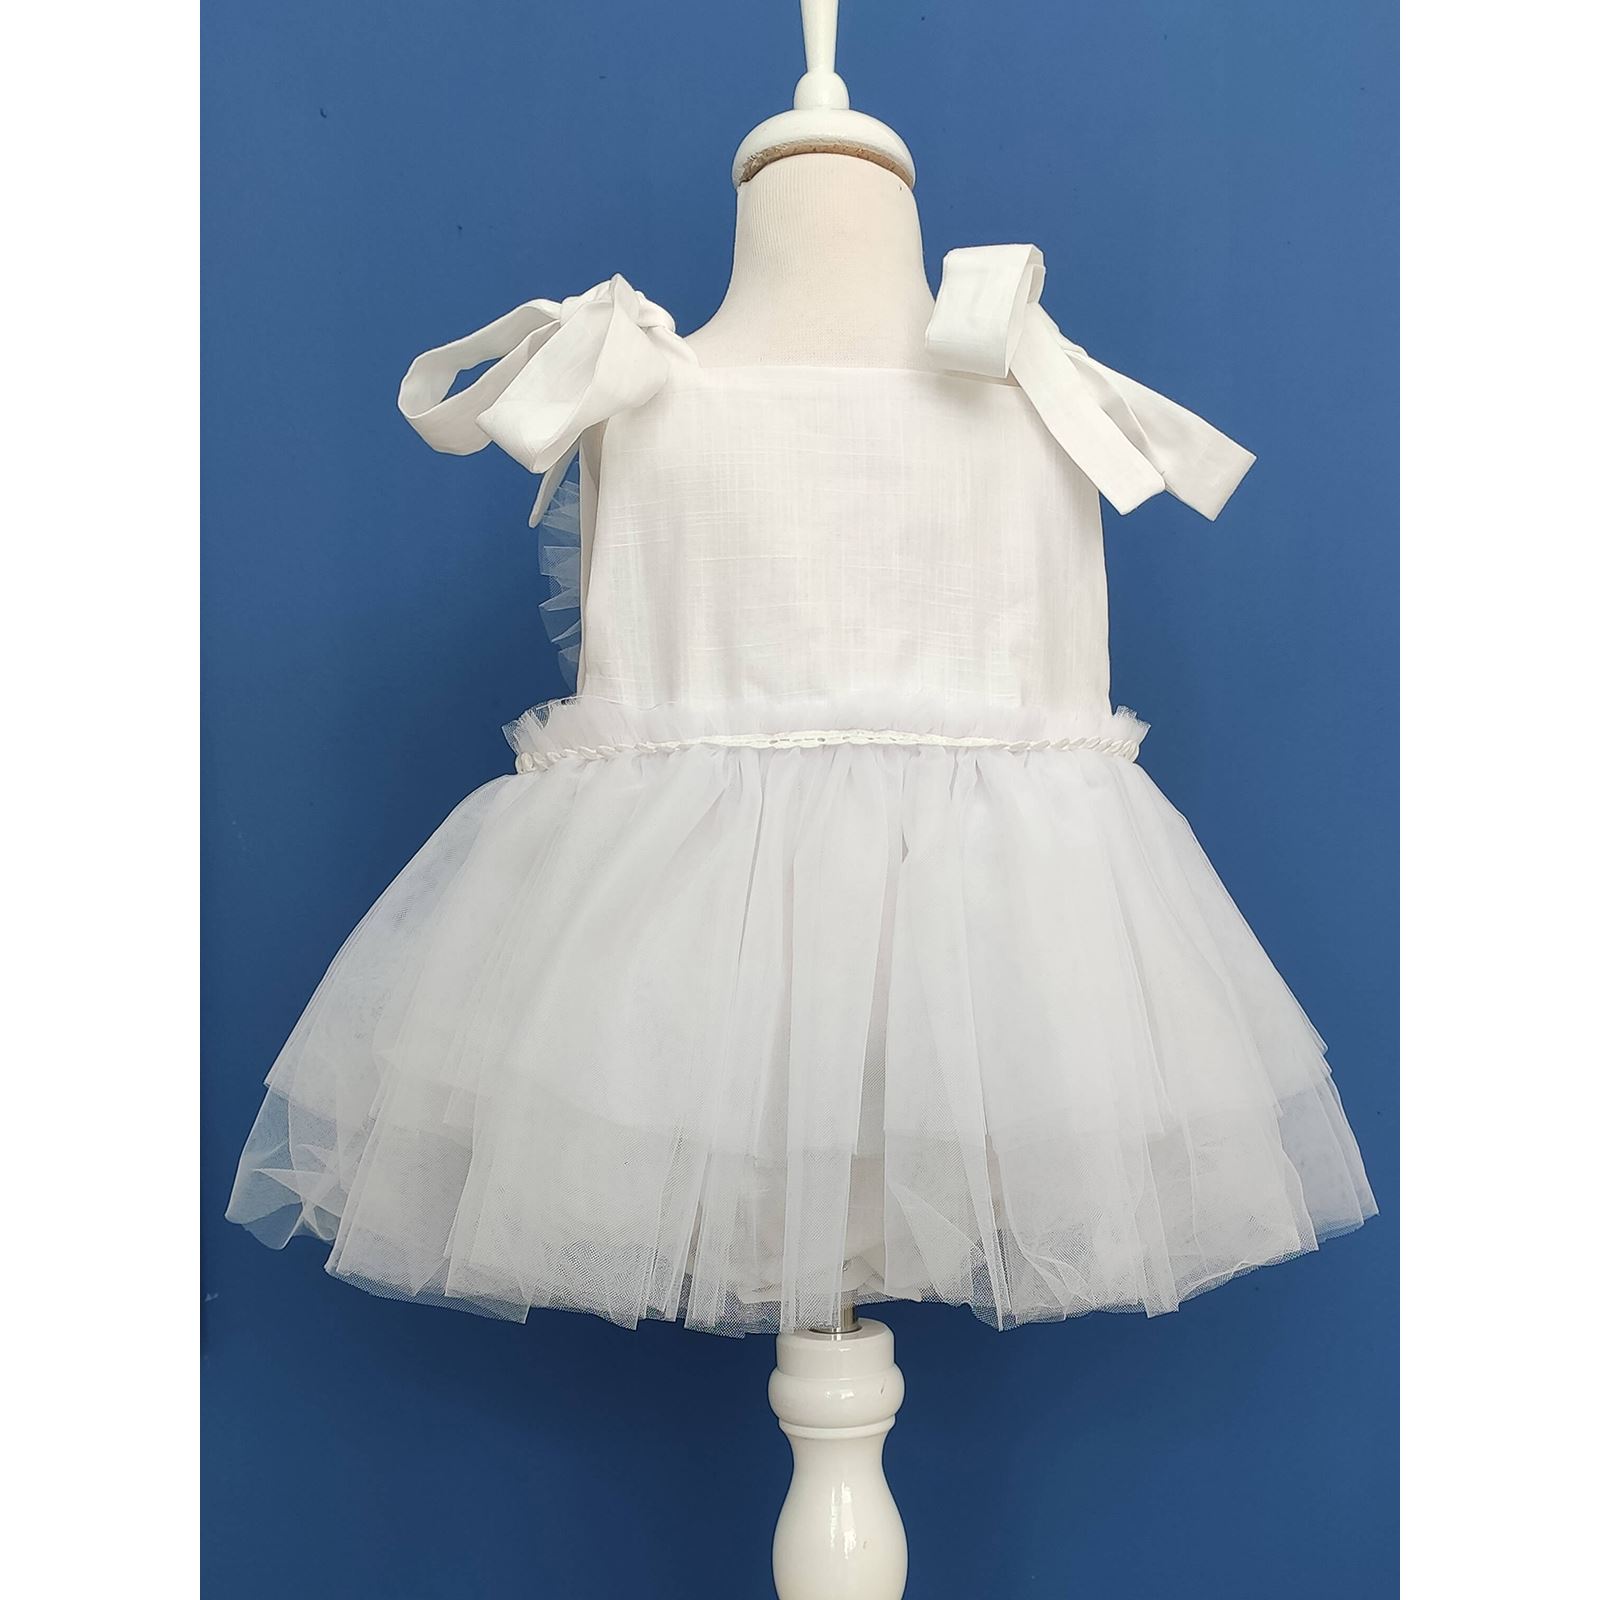 Shecco Babba Kalpli Pamuk Kız Bebek Tulum Tütü Elbise ve Bandana Takım, Çıtçıtlı Bebek Doğum Günü Elbisesi 0-2 Yaş Tulum Beyaz